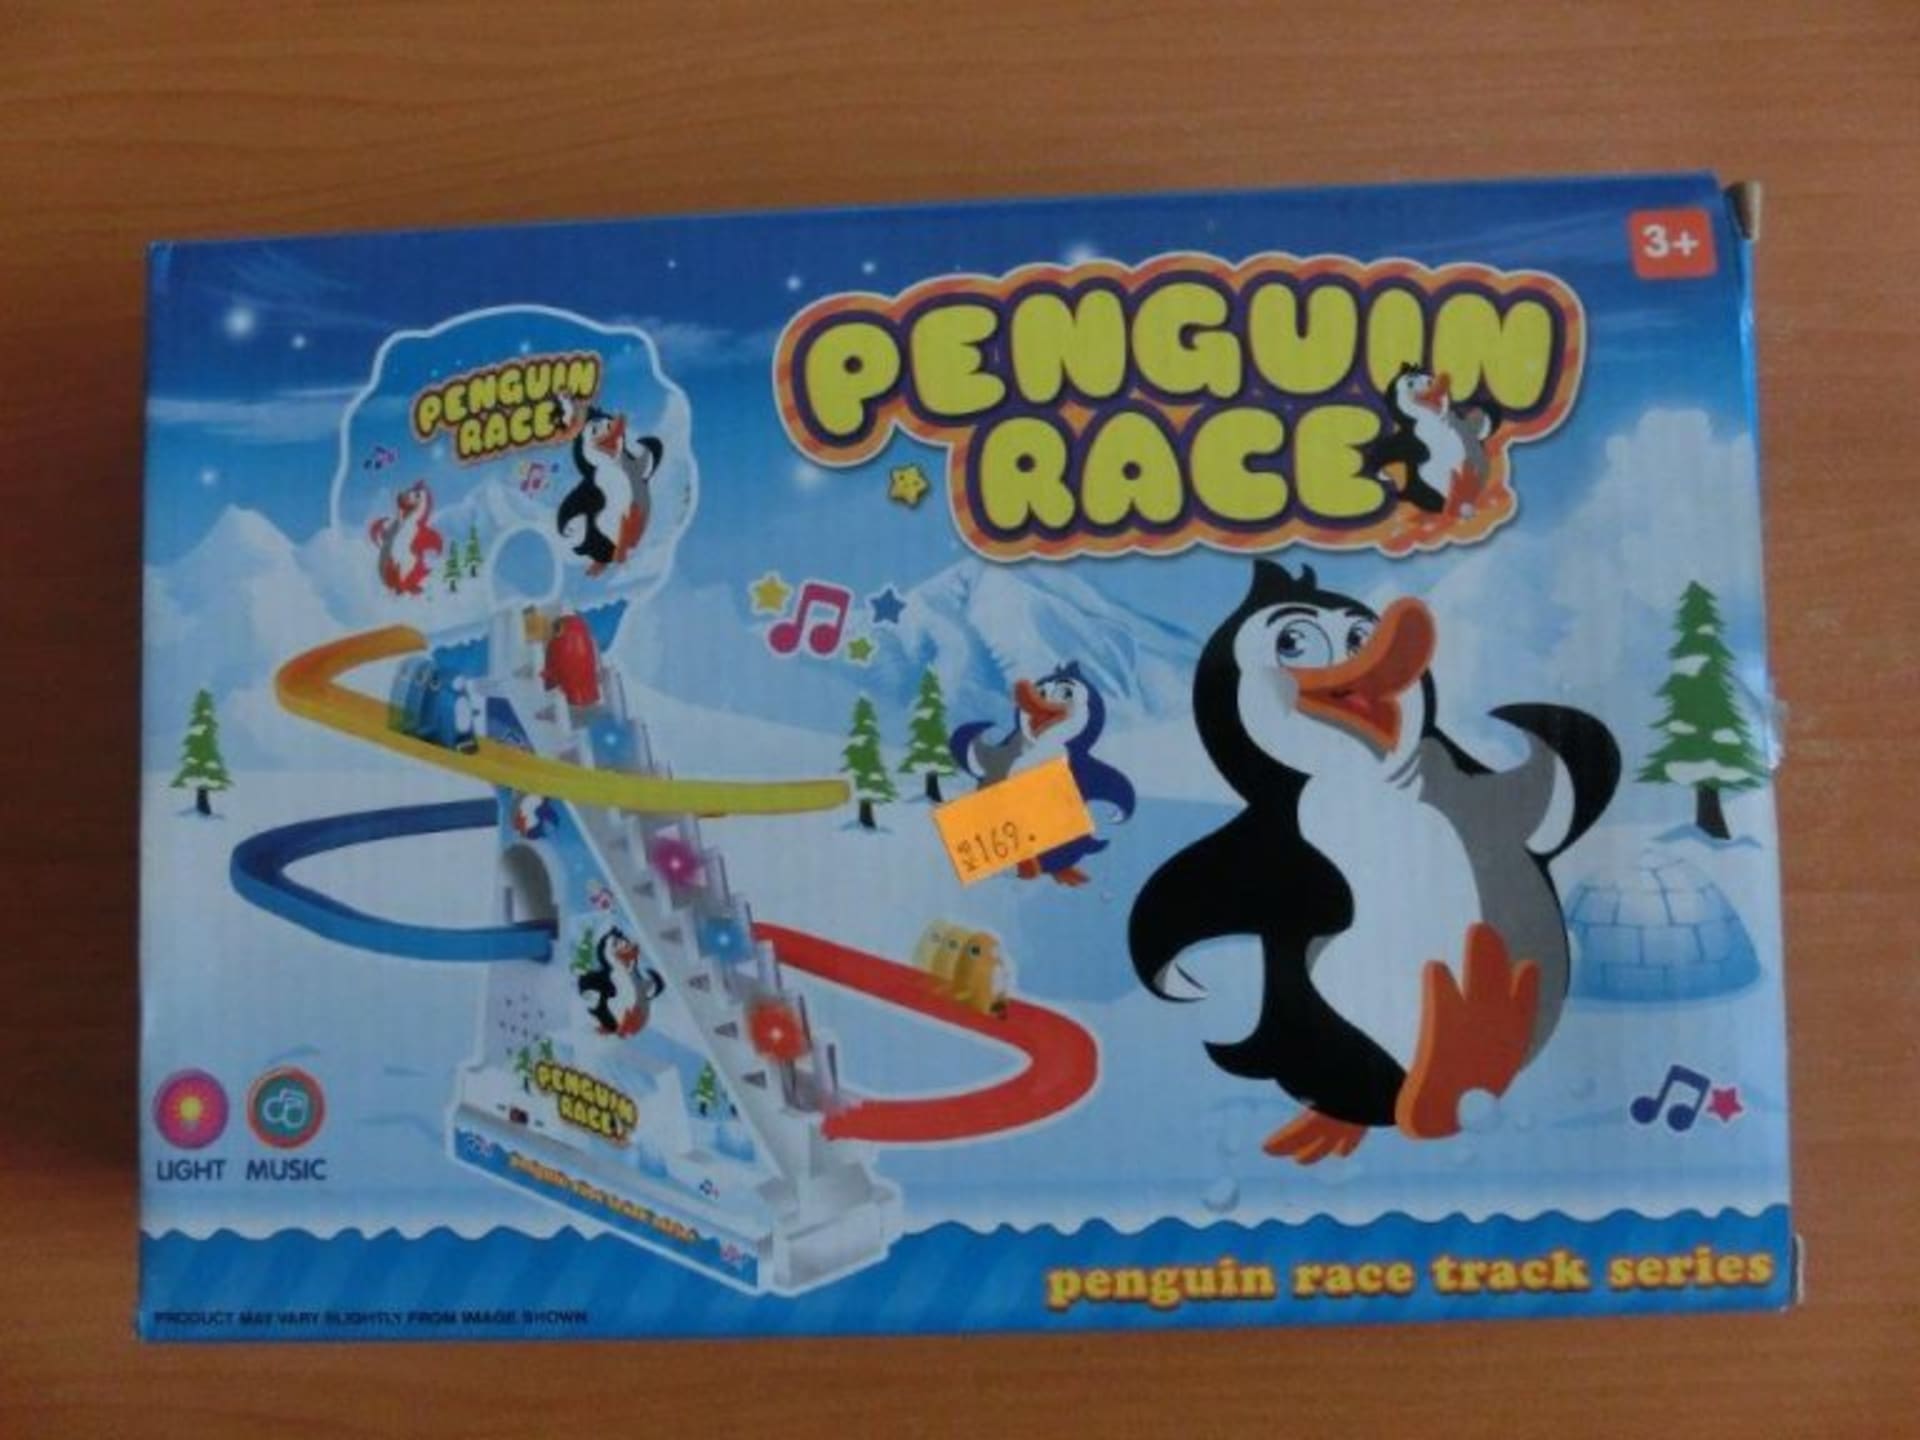 Hračka "Penguin Race" obsahuje nadlimitní množství olova a kadmia.